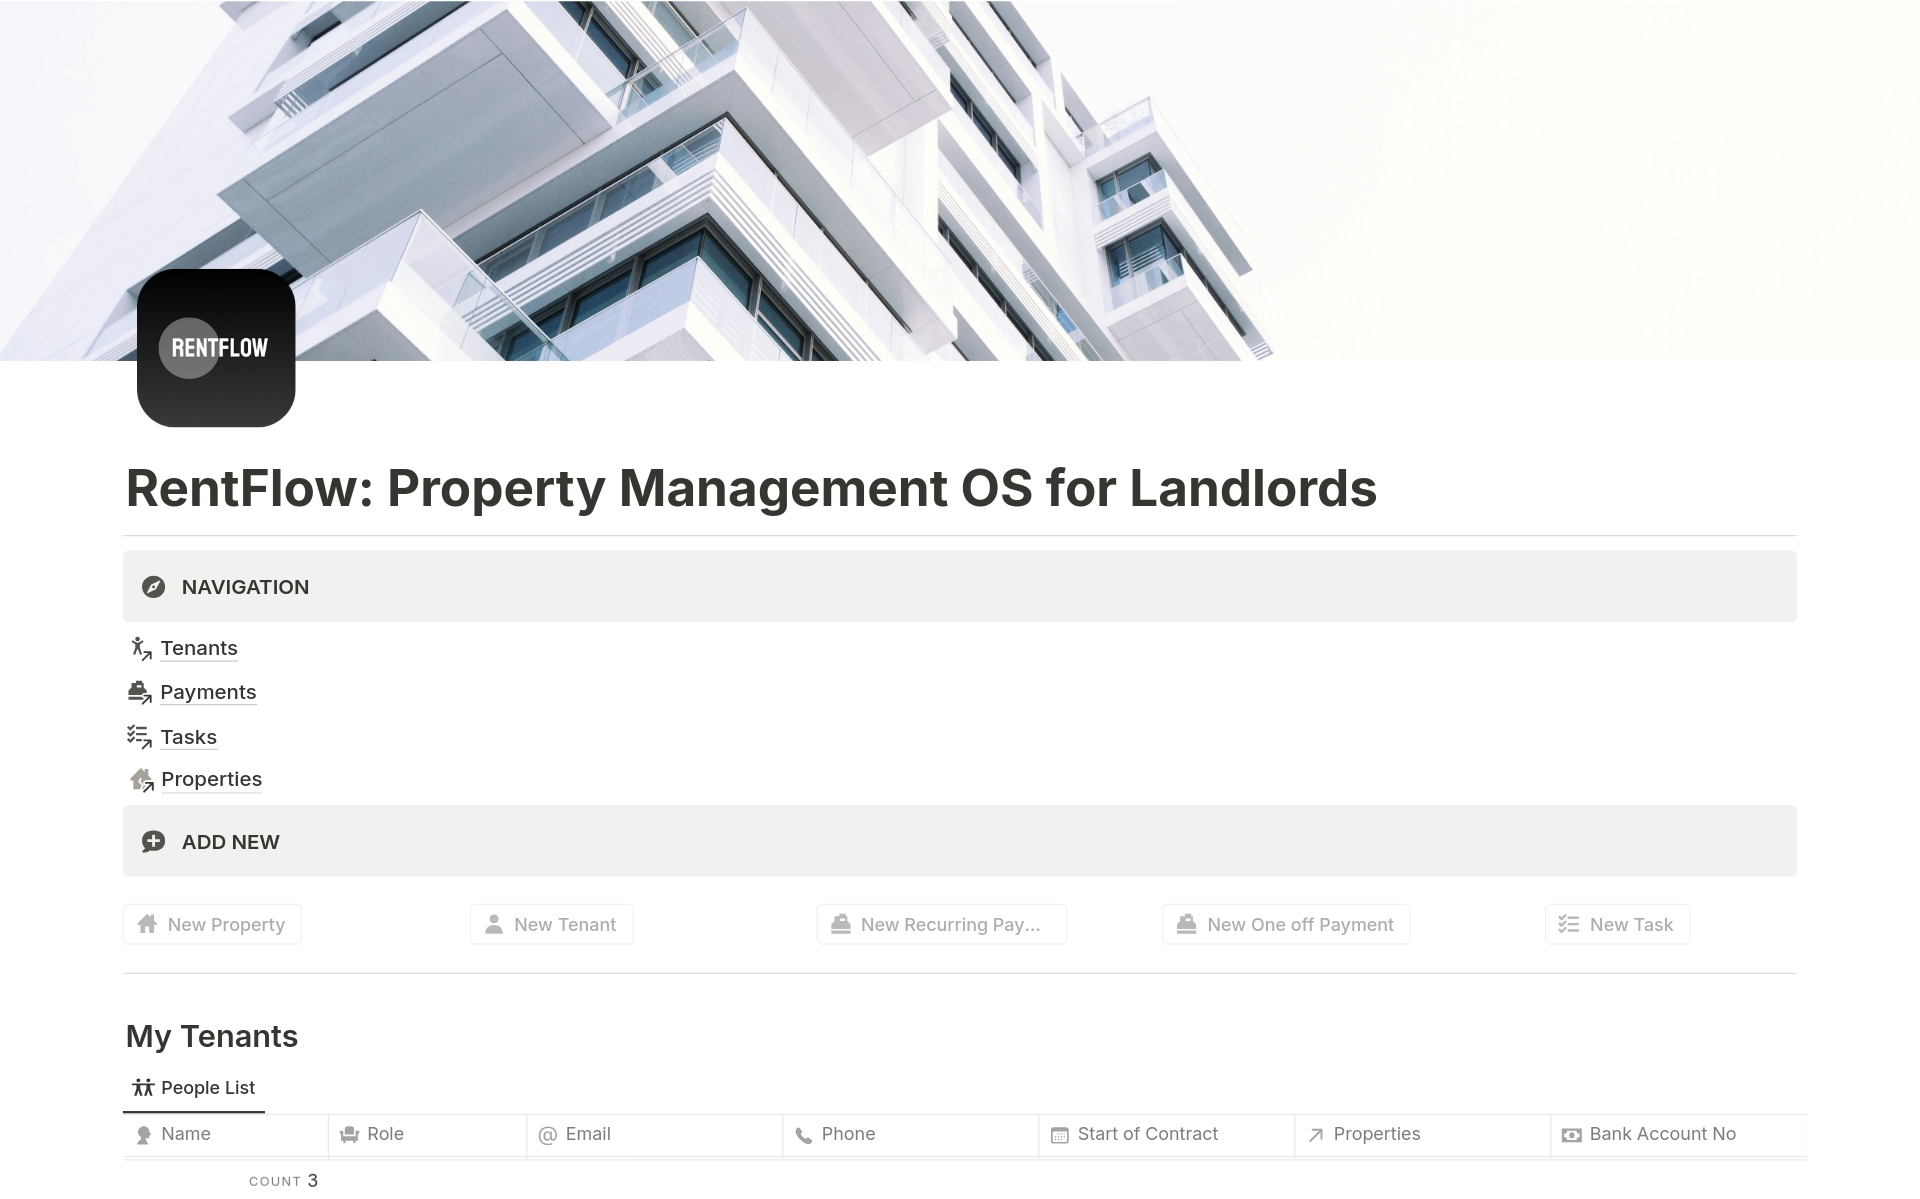 Vista previa de una plantilla para RentFlow: Property Management OS for Landlords